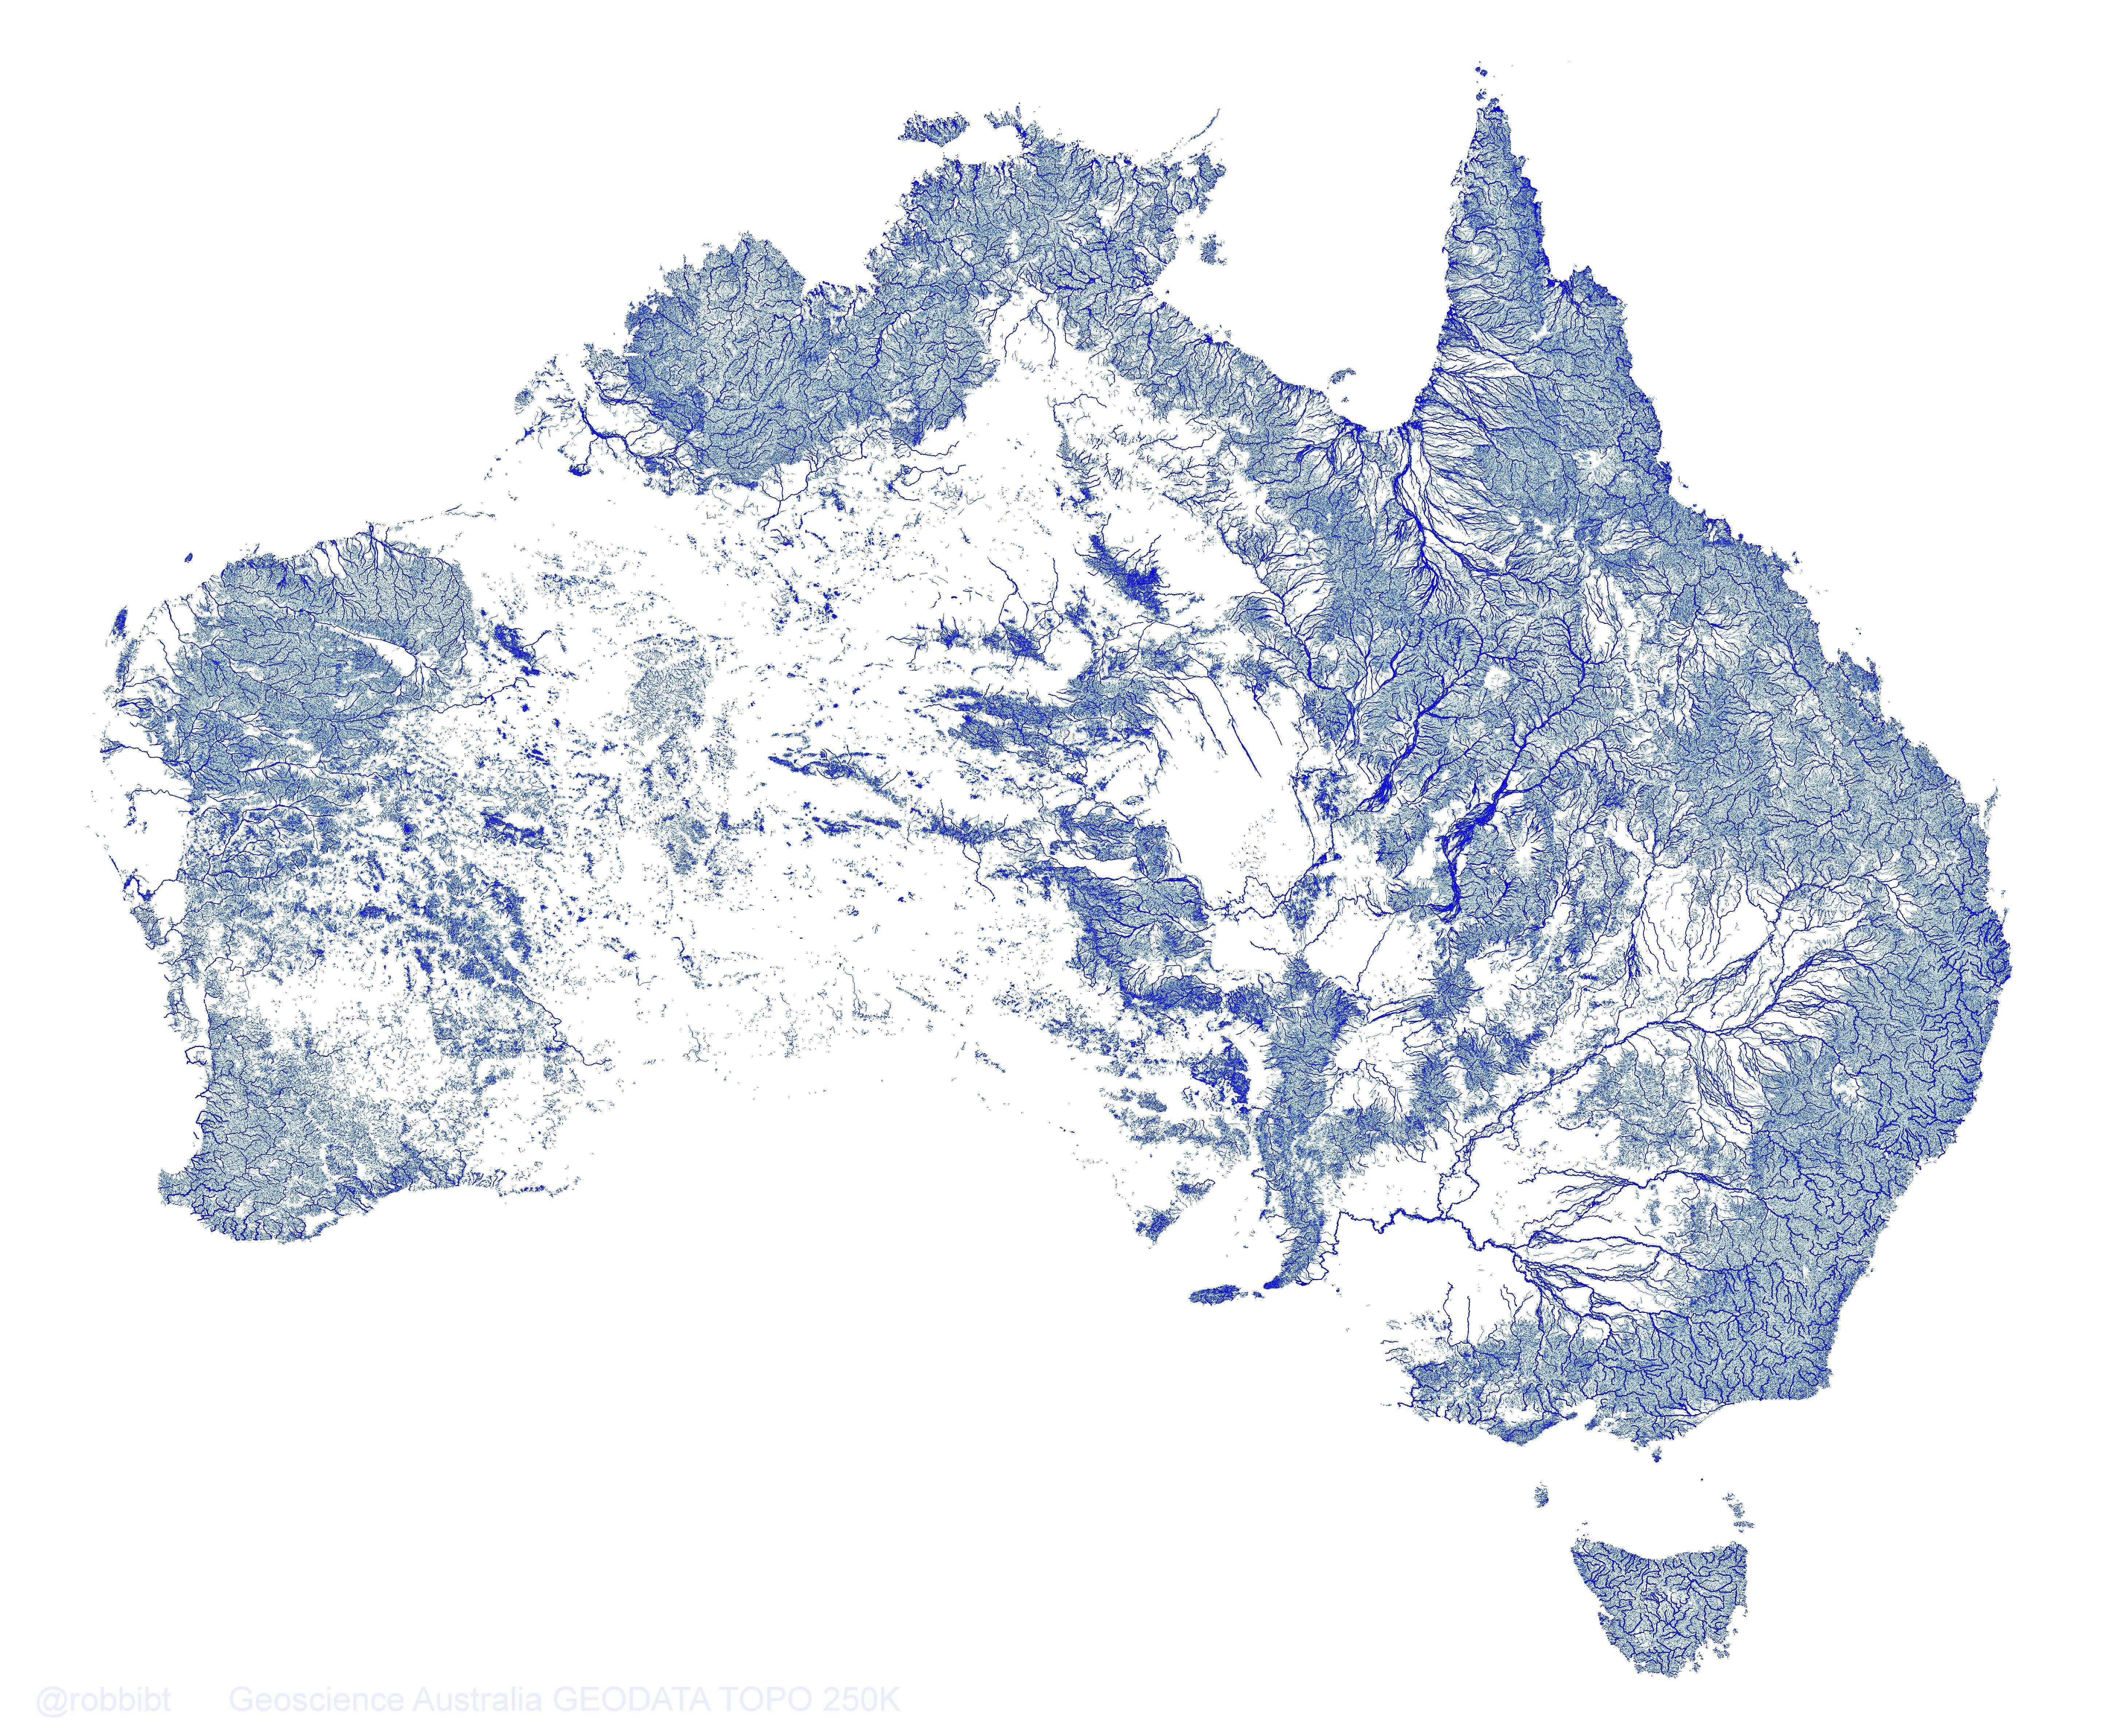 mus eller rotte Uden tvivl godt stream, River, Australia, Map Wallpapers HD / Desktop and Mobile Backgrounds